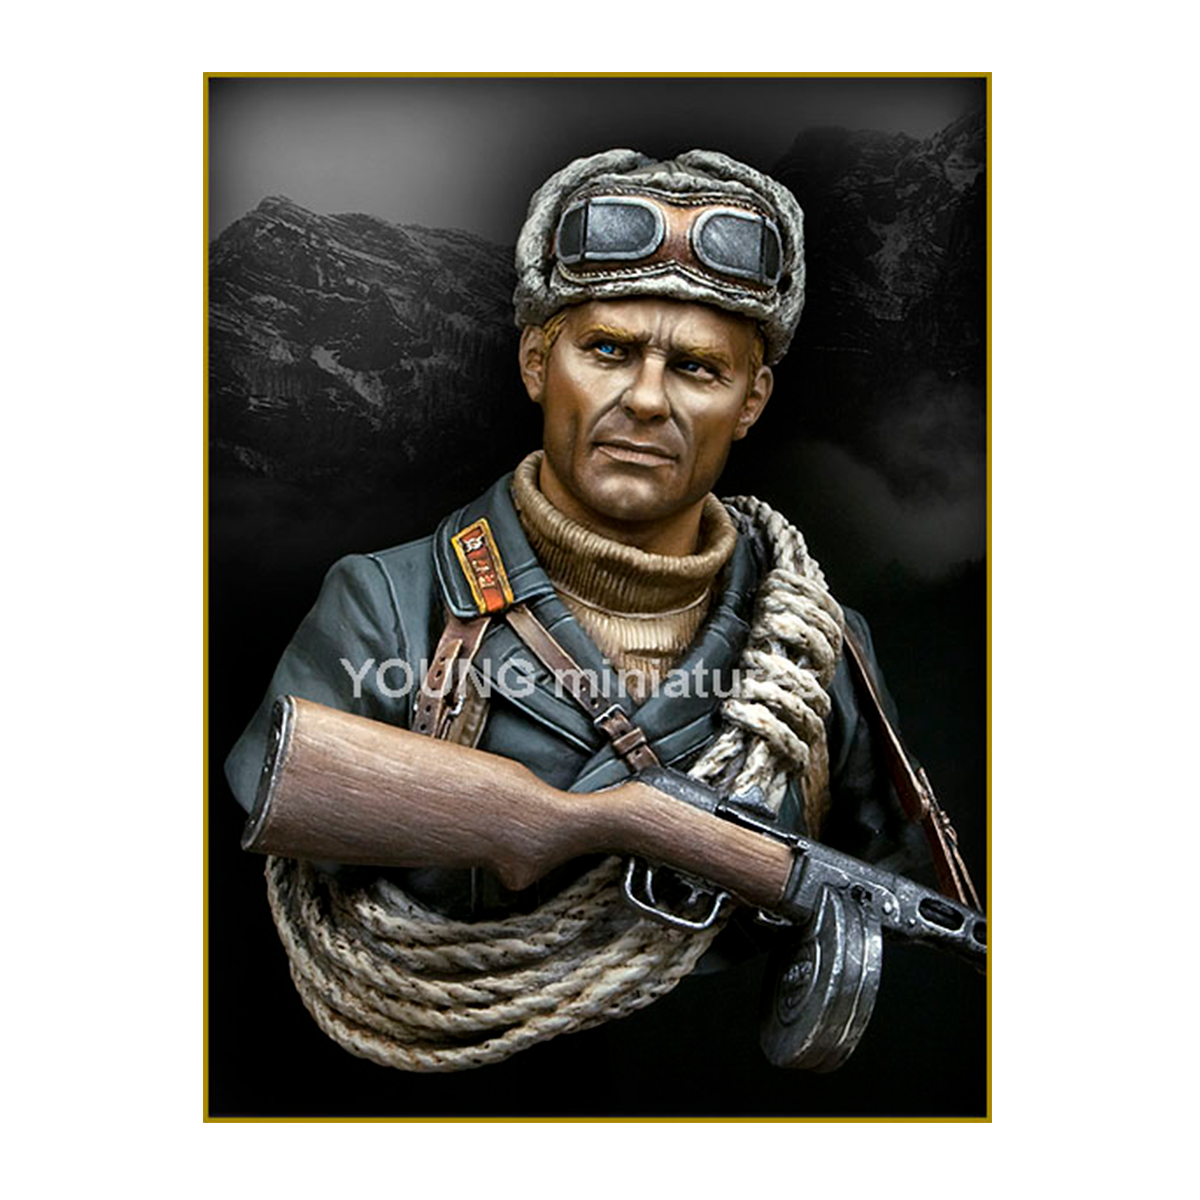 SOVIET MOUNTAINEER OFFICER 1942